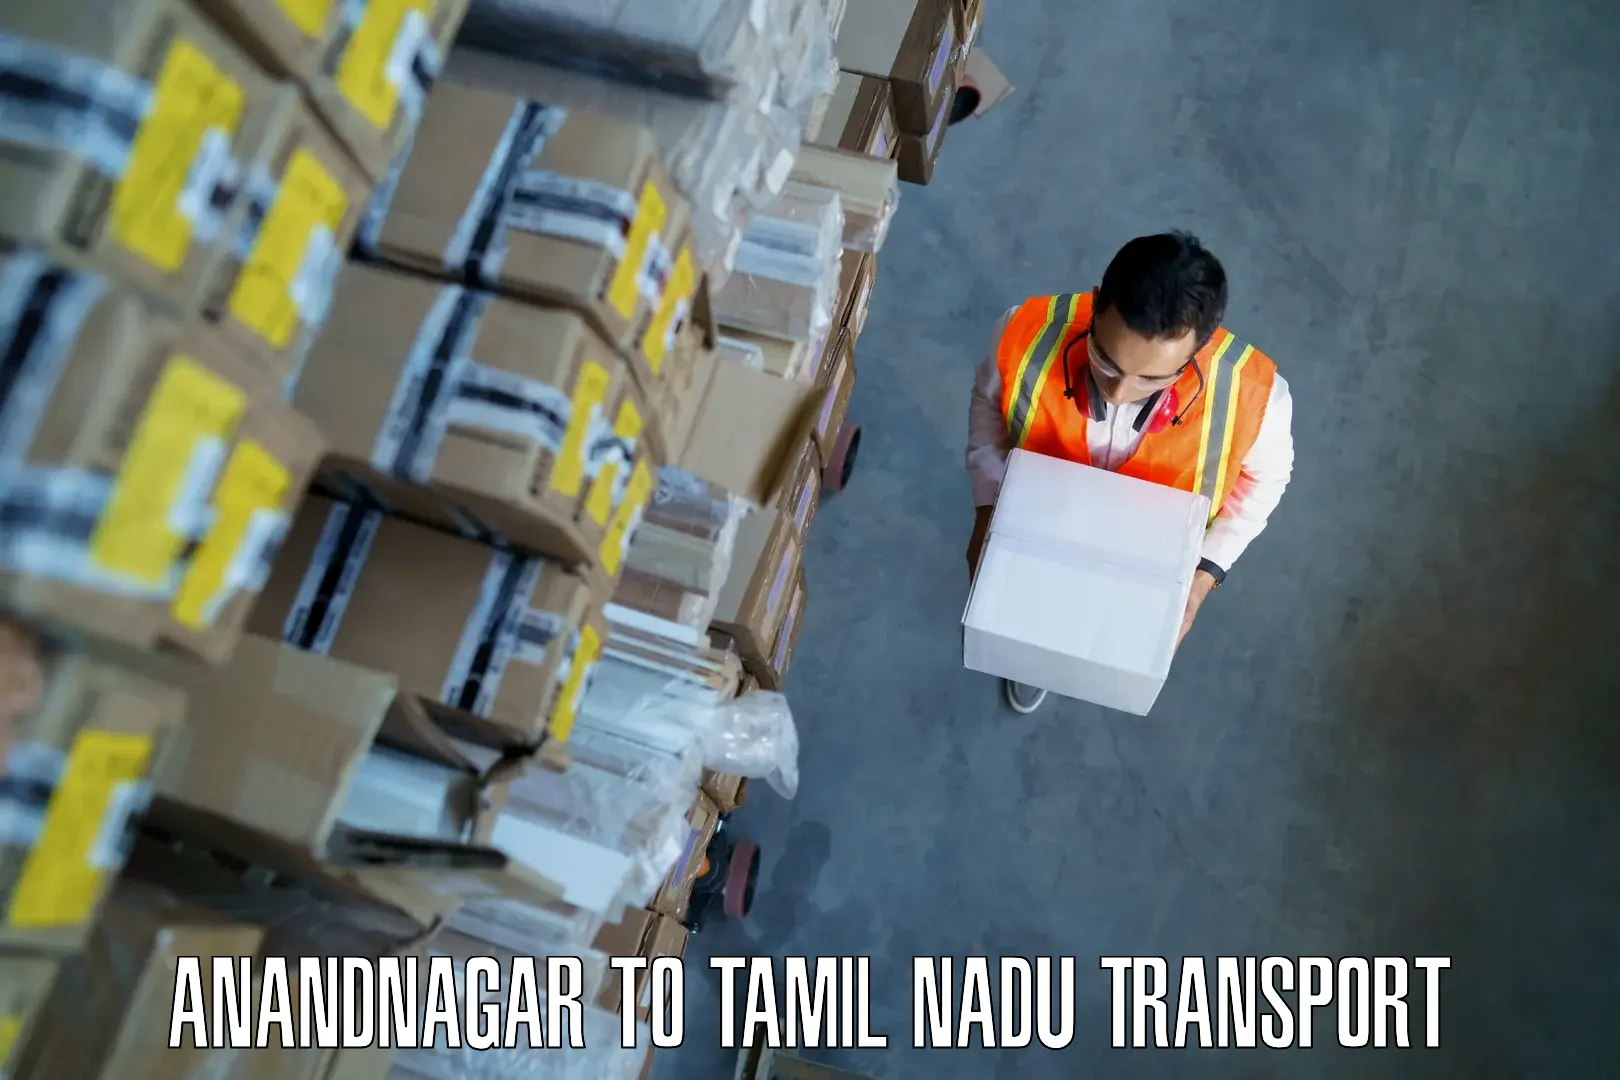 Lorry transport service Anandnagar to Tiruchirappalli